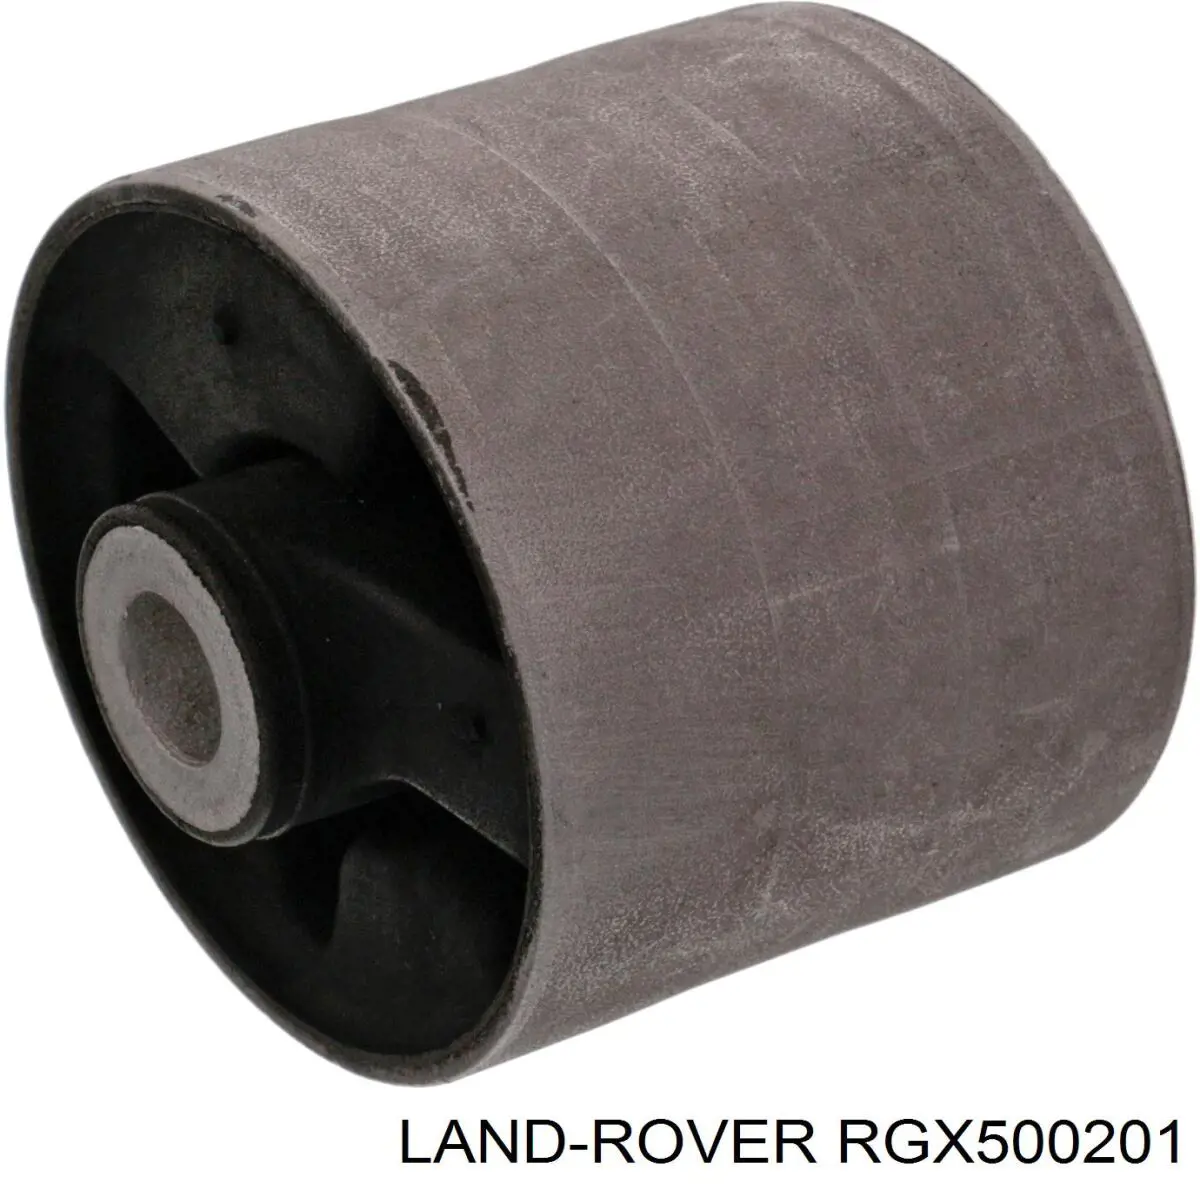 RGX500201 Land Rover bloco silencioso do braço oscilante superior traseiro